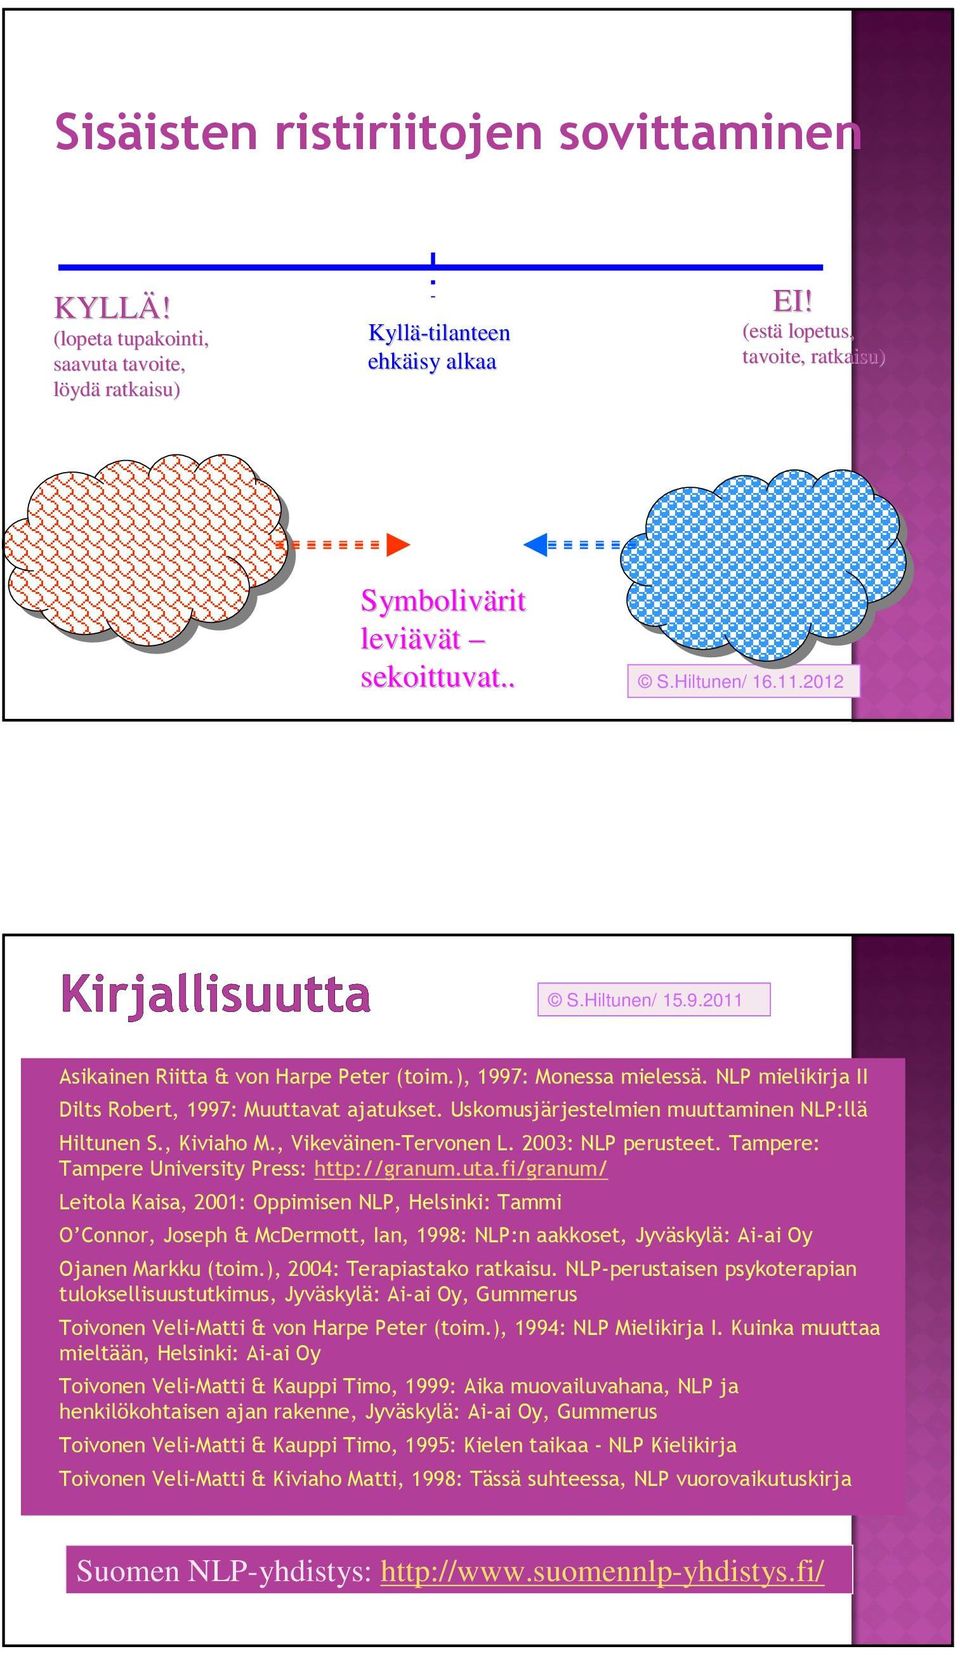 Uskomusjärjestelmien muuttaminen NLP:llä Hiltunen S., Kiviaho M., Vikeväinen-Tervonen L. 2003: NLP perusteet. Tampere: Tampere University Press: http://granum.uta.